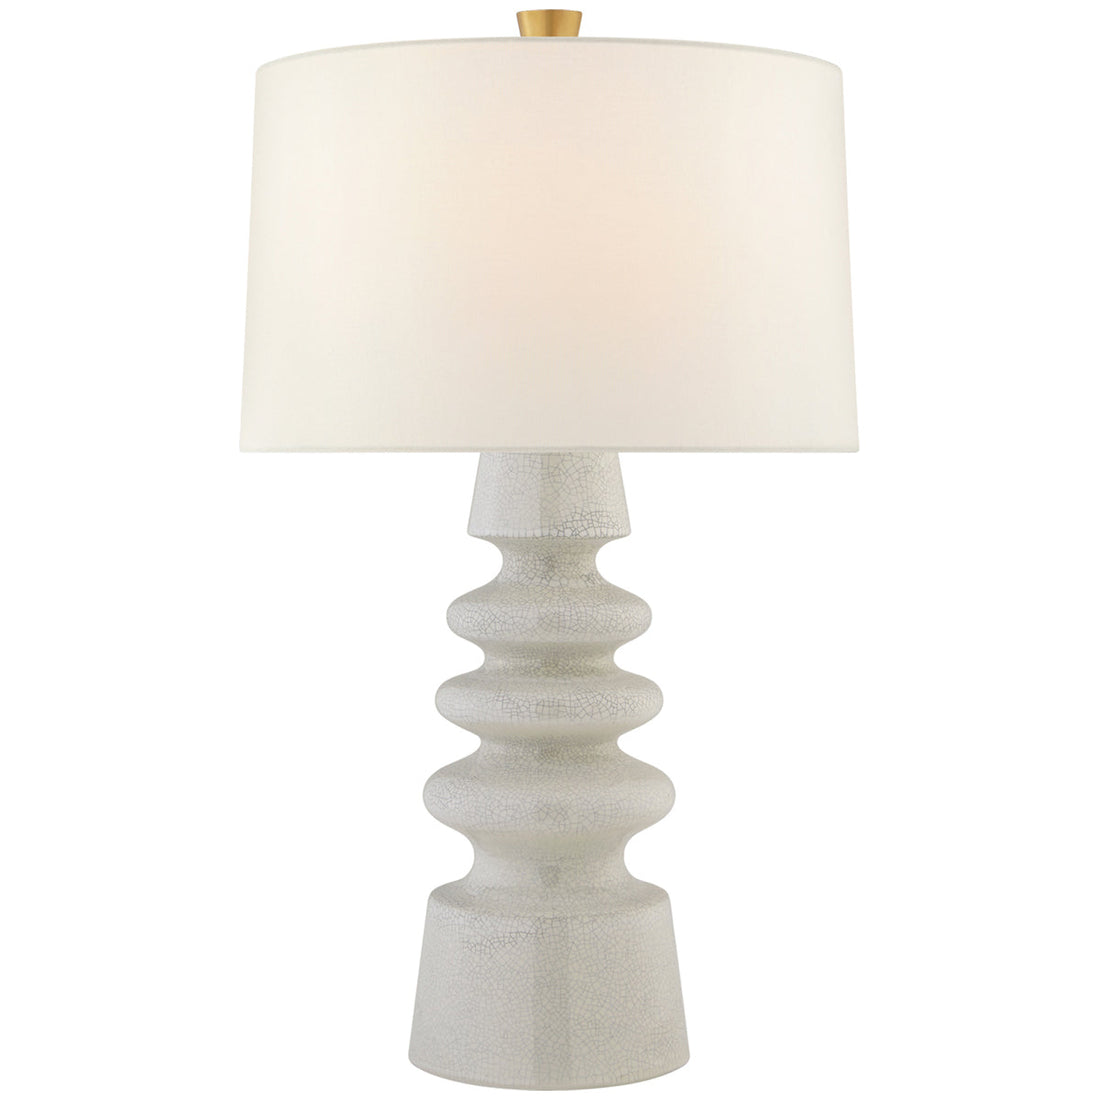 Visual Comfort Andreas Medium Table Lamp